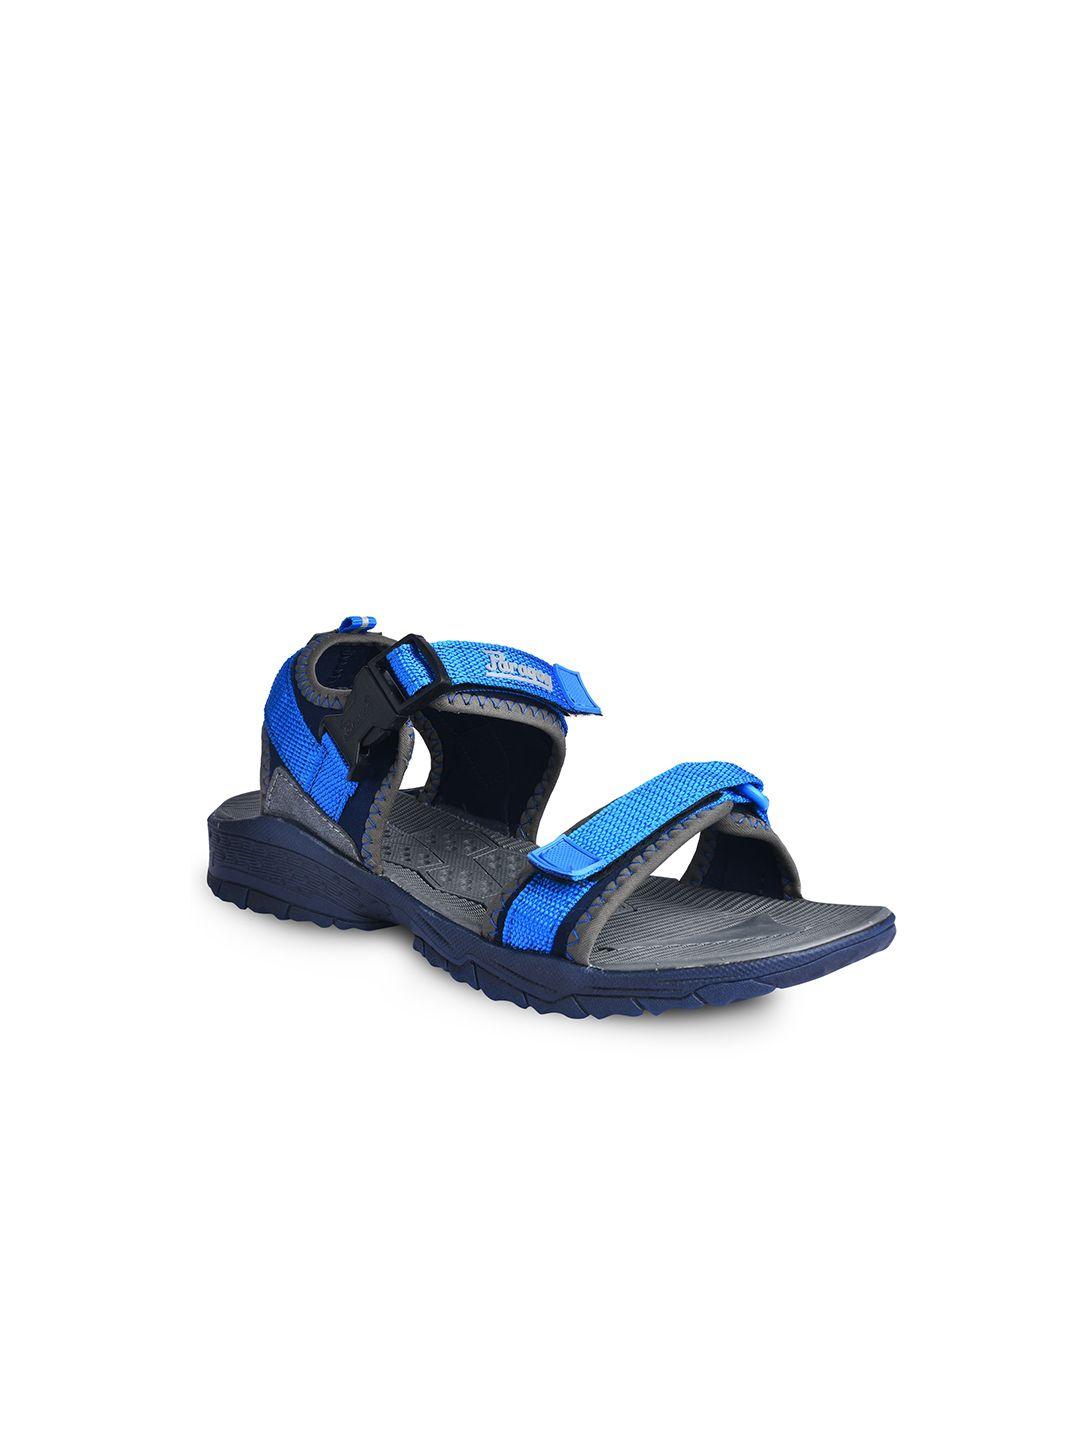 paragon men blue & black sports sandals